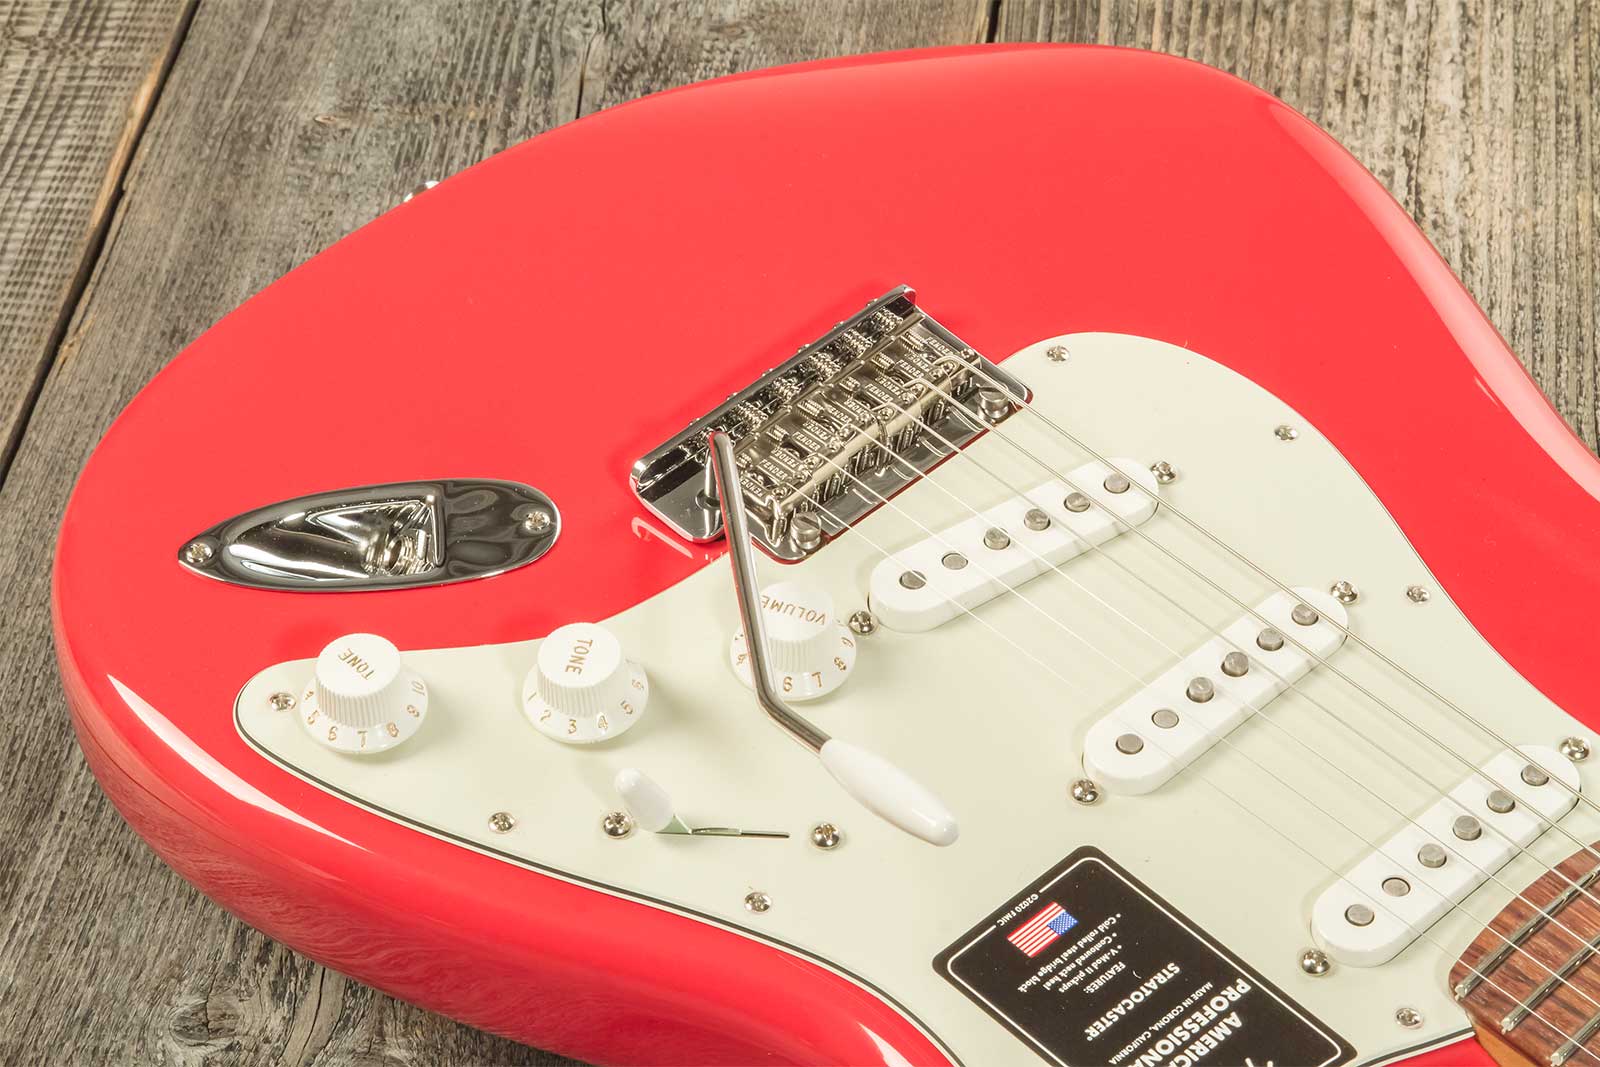 Fender Strat American Professional Ii Ltd Usa 3s Trem Rw - Fiesta Red - Elektrische gitaar in Str-vorm - Variation 6